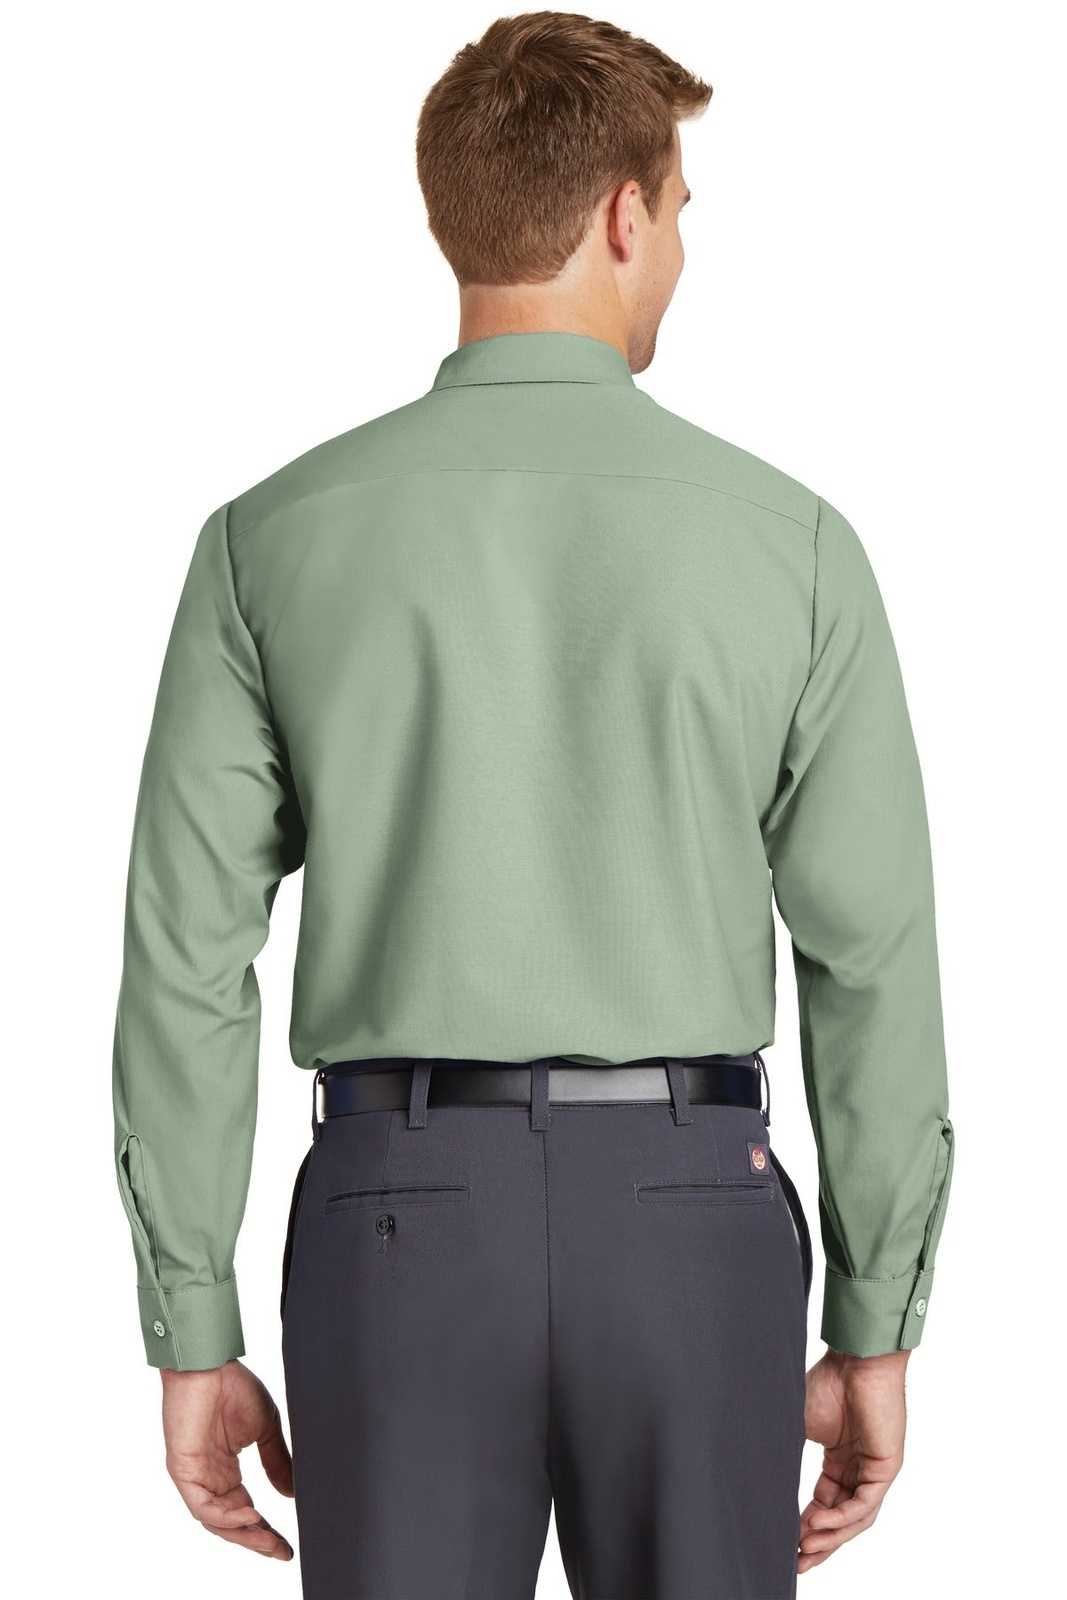 Red Kap SP14 Long Sleeve Industrial Work Shirt - Light Green - HIT a Double - 1